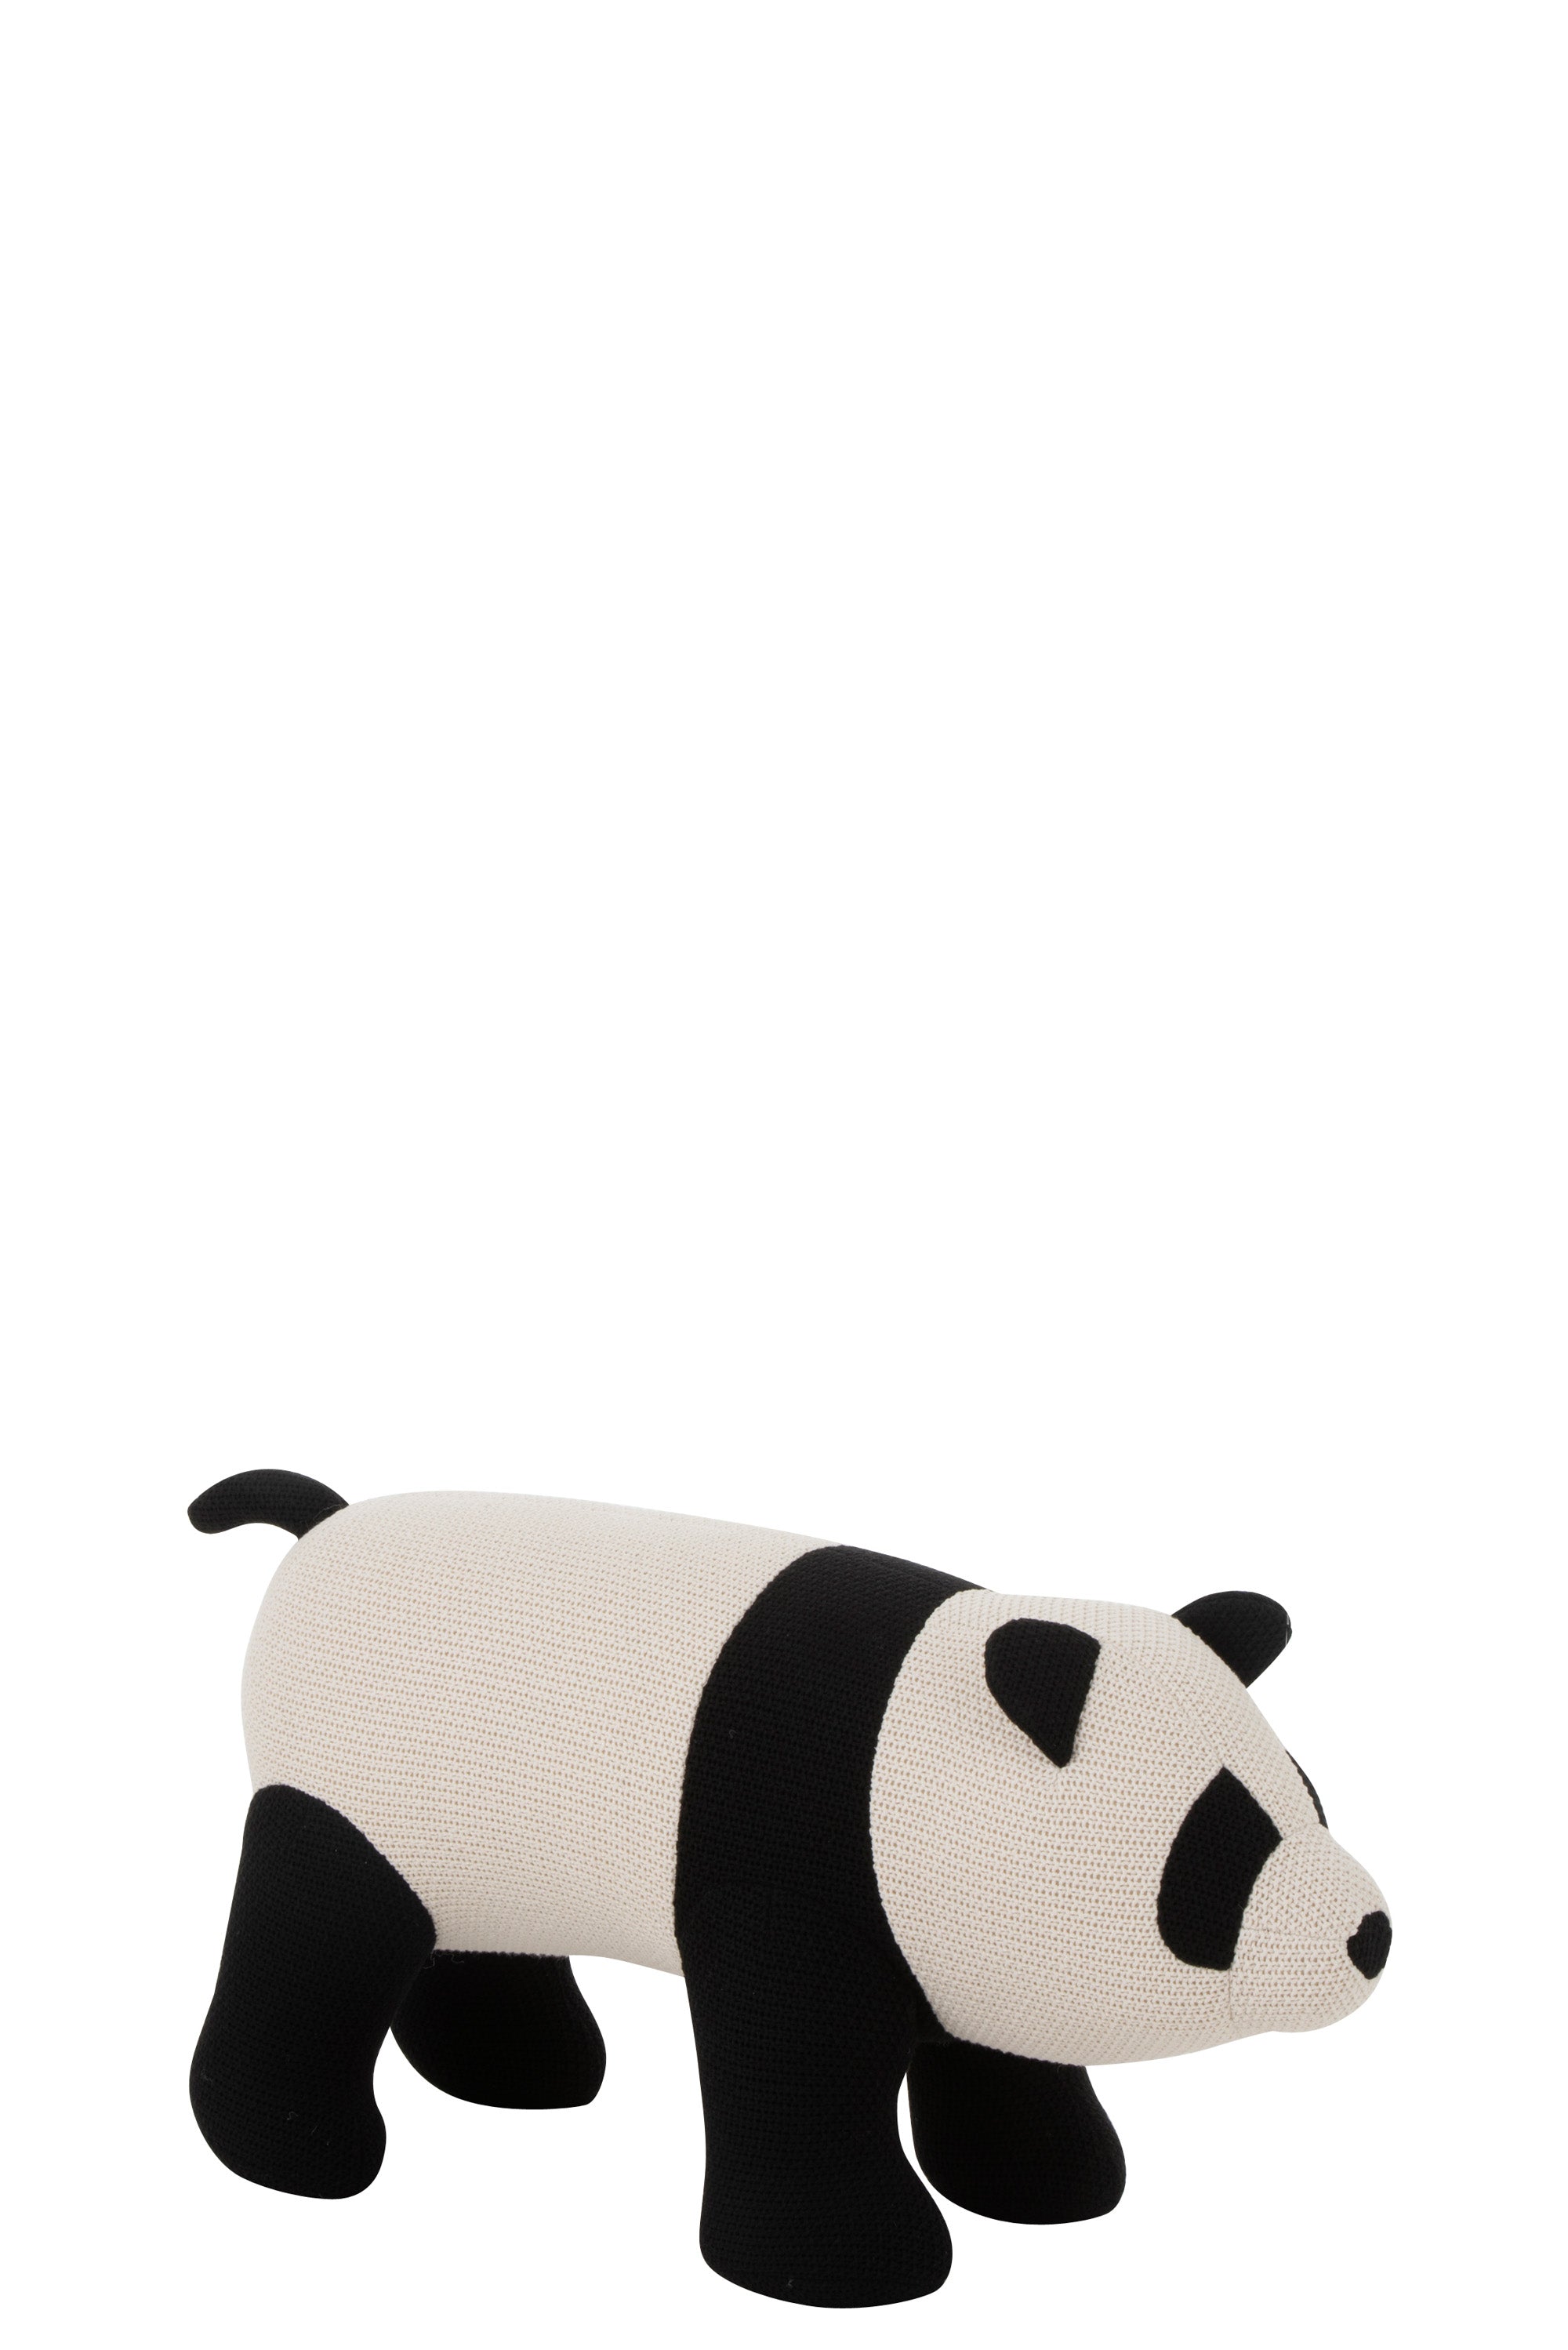 Panda mit einem Bezug aus Baumwolle als  Sitzmöbel für Kinder; Halskragen, Beine , Schwanz, Ohren, Augen und Nase schwarz , restlicher Körper weiß, schlichtes Design.